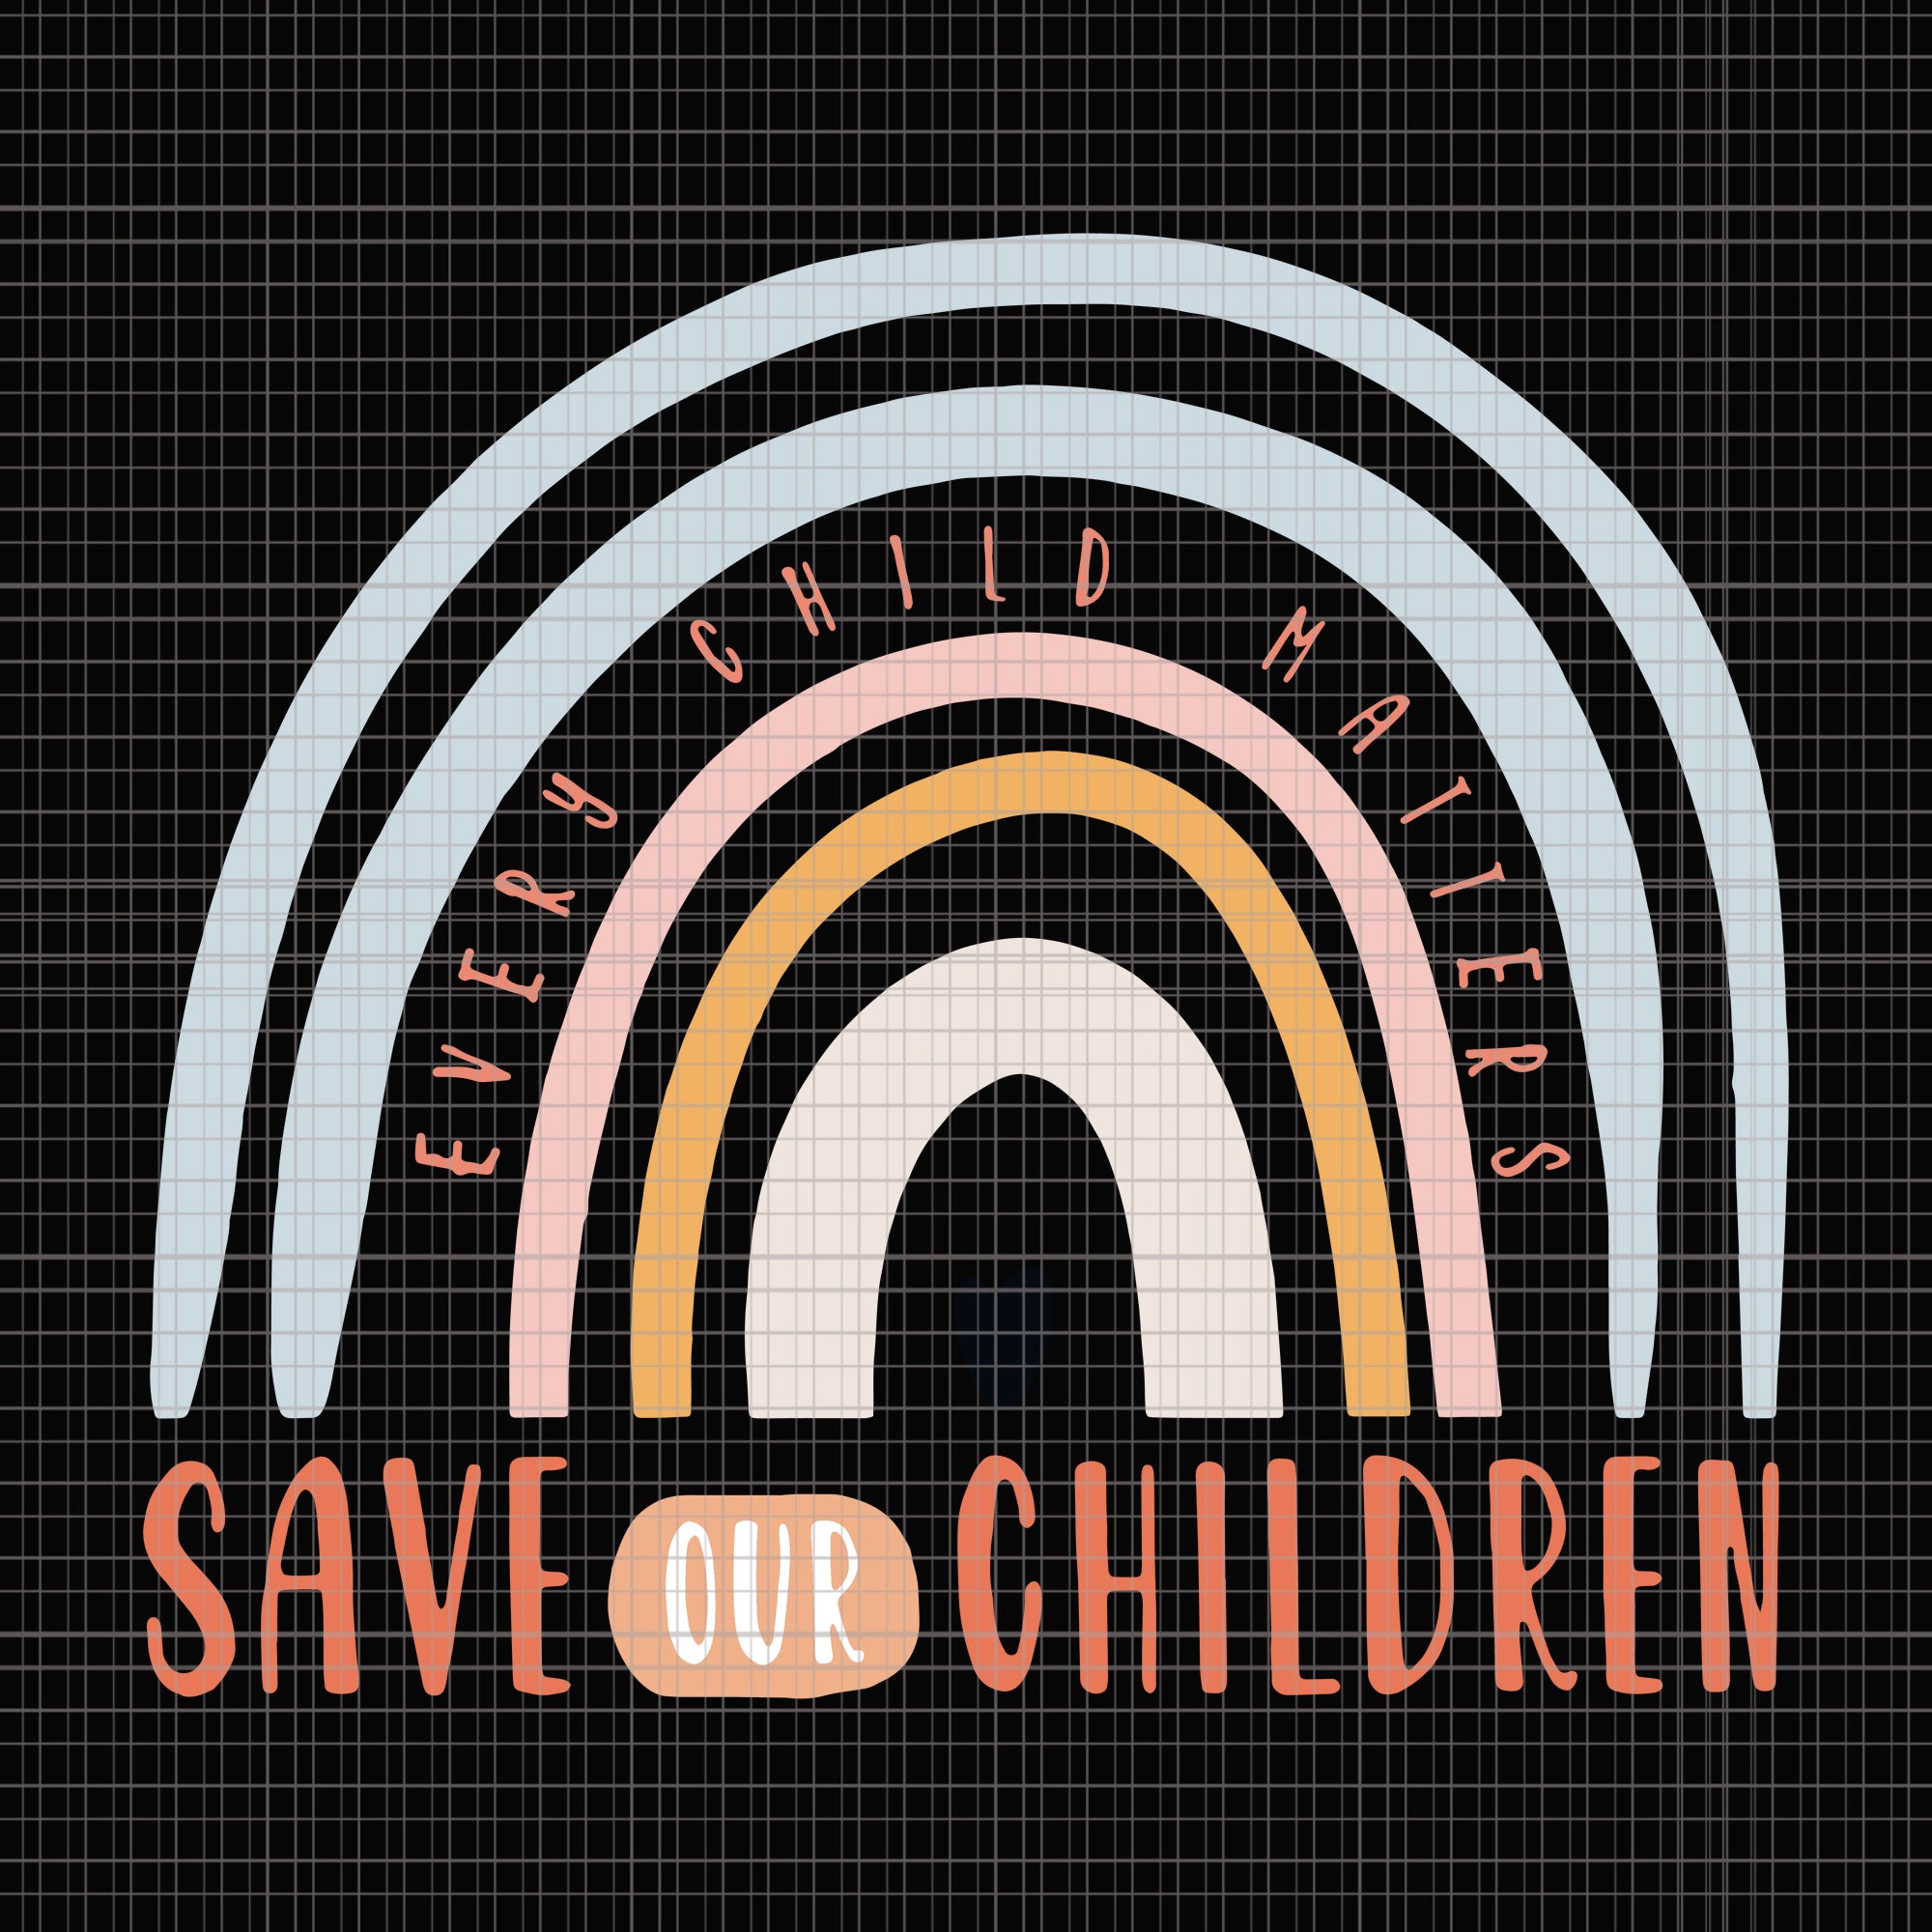 Save our children, save our children svg, save our children png, every child matters save our children, children